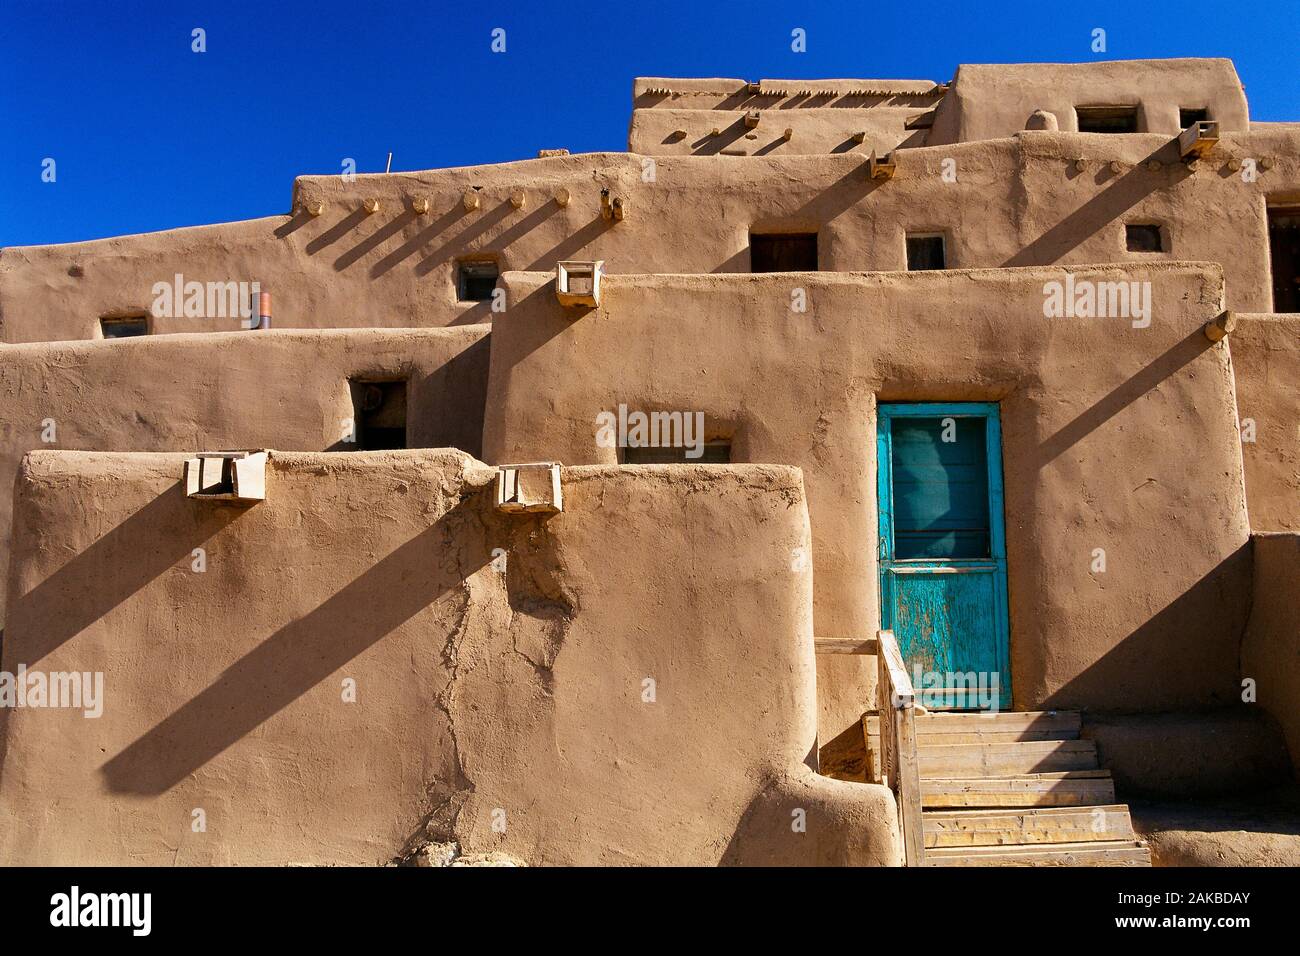 View of old city Taos Pueblo, Taos, New Mexico, USA Stock Photo